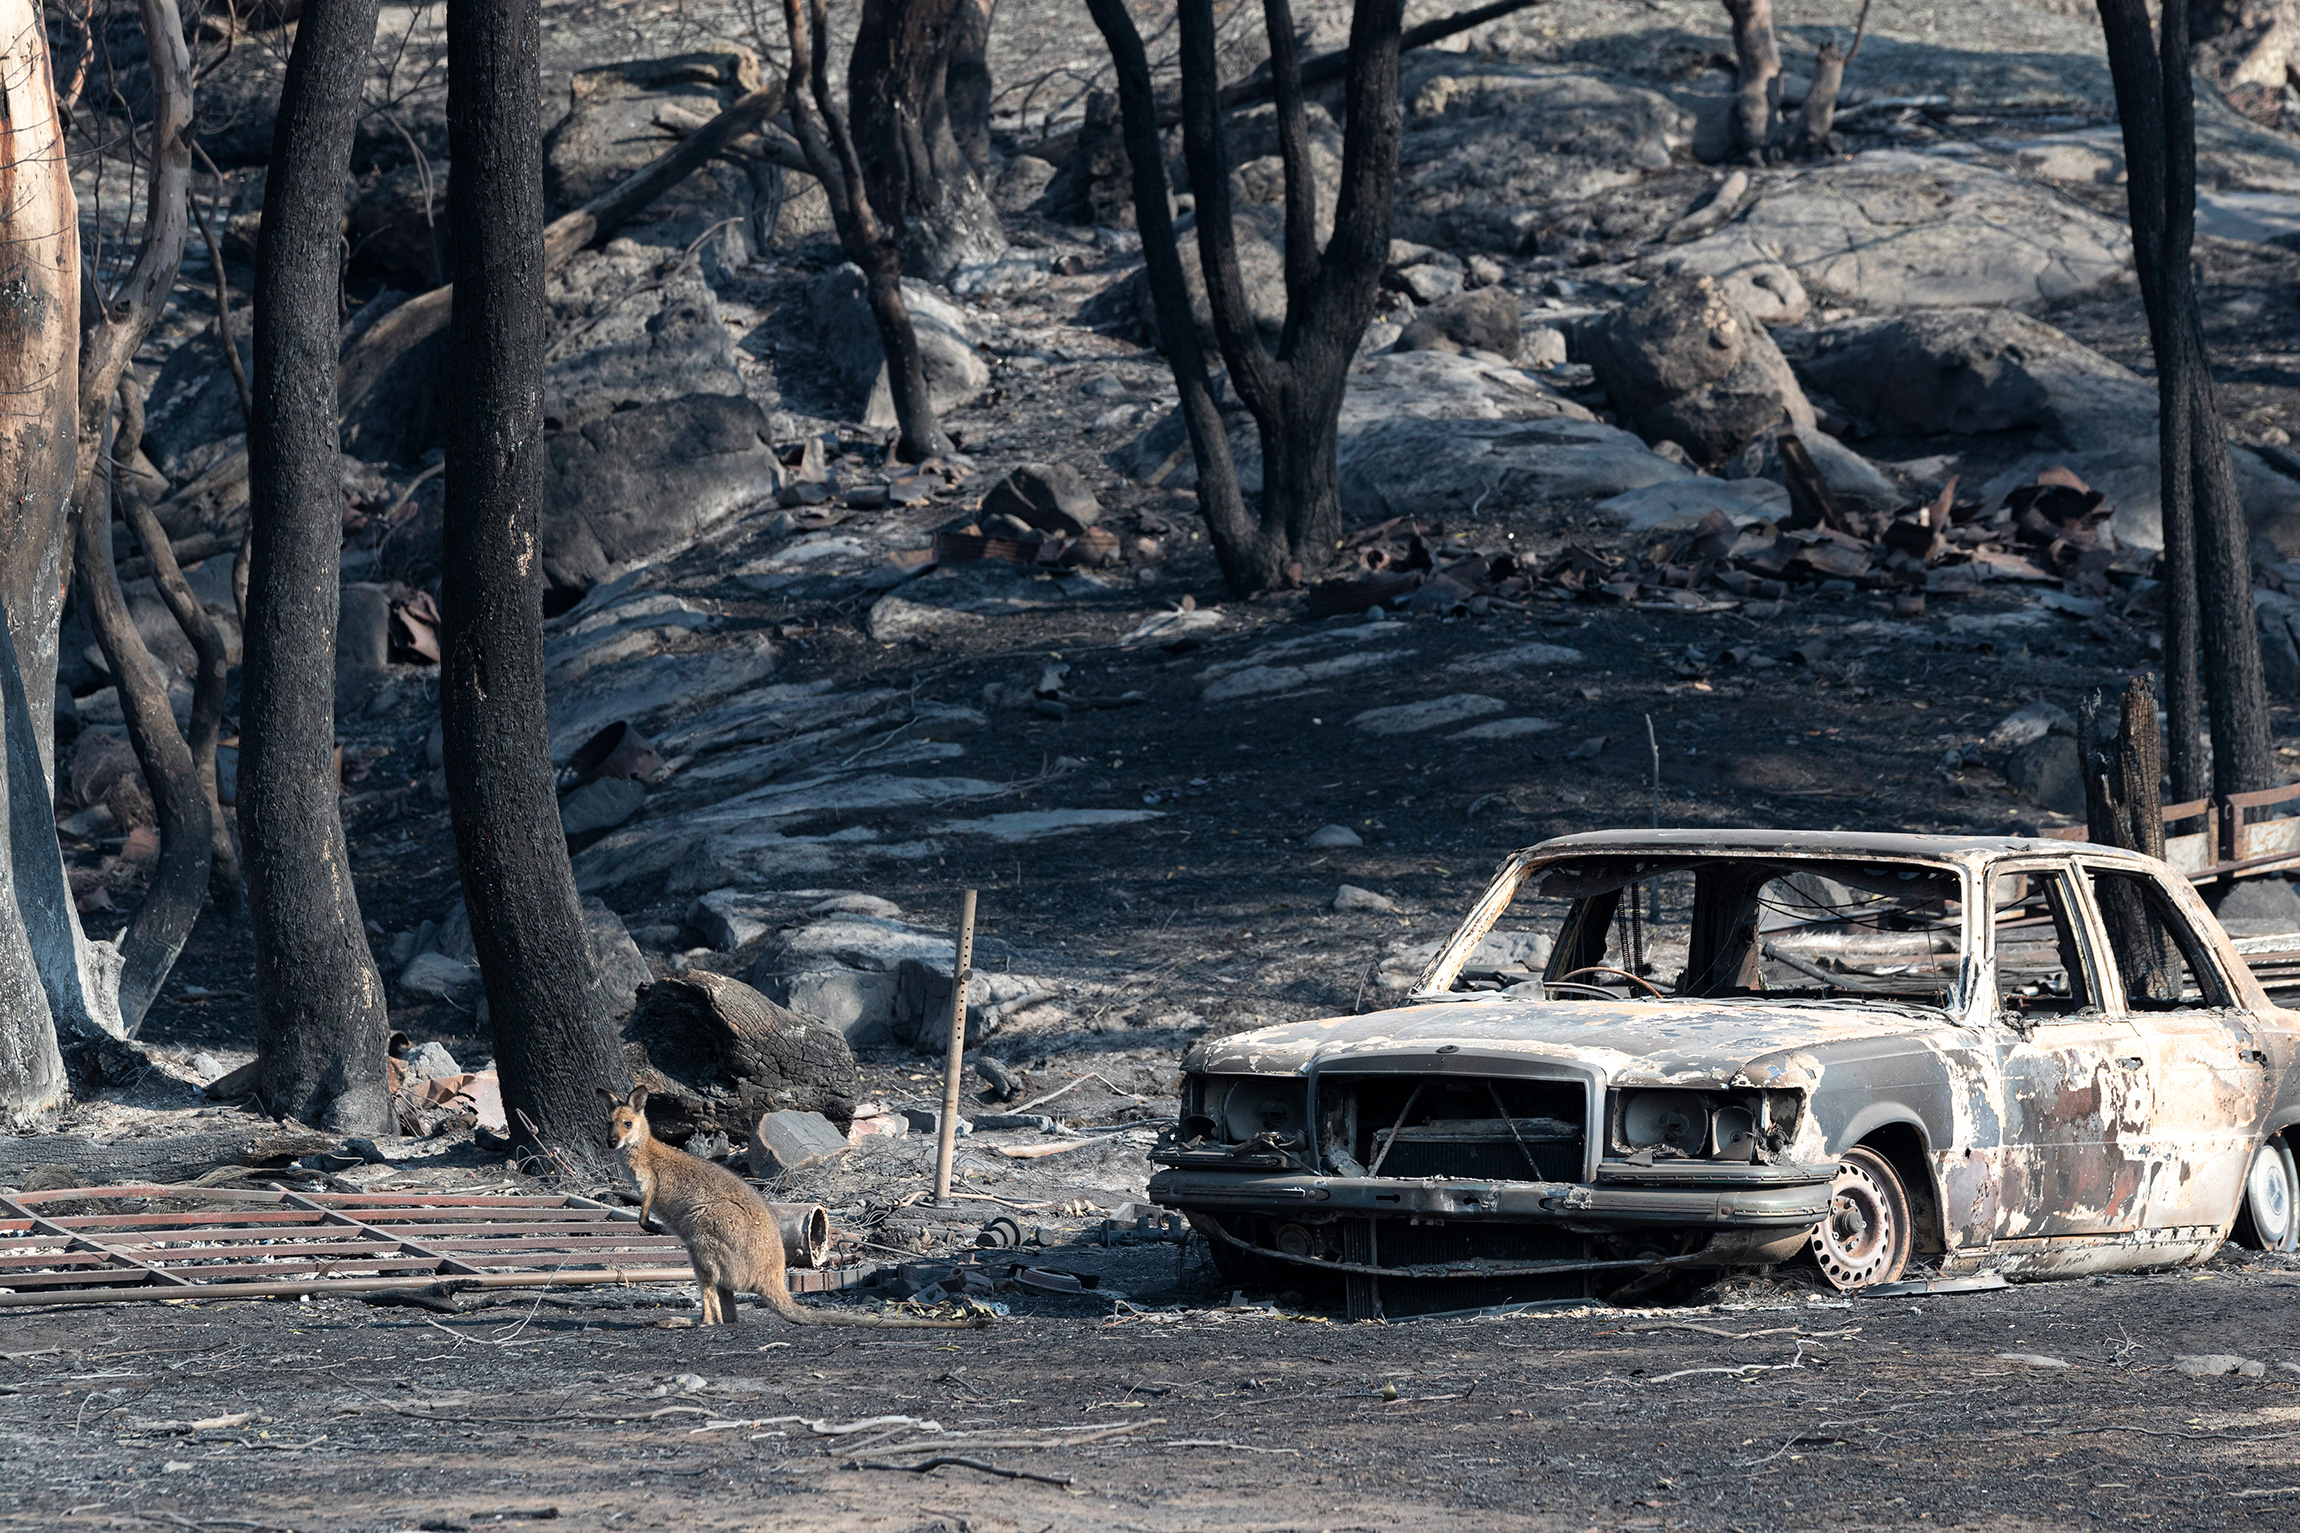 На январь пришелся пик природных пожаров в Австралии, которые начались еще в 2019 году. В результате природного бедствия погибли 475 человек, более 1 млрд животных. Уничтожено около 10 млн га леса, более 100 видов животных оказались под угрозой исчезновения